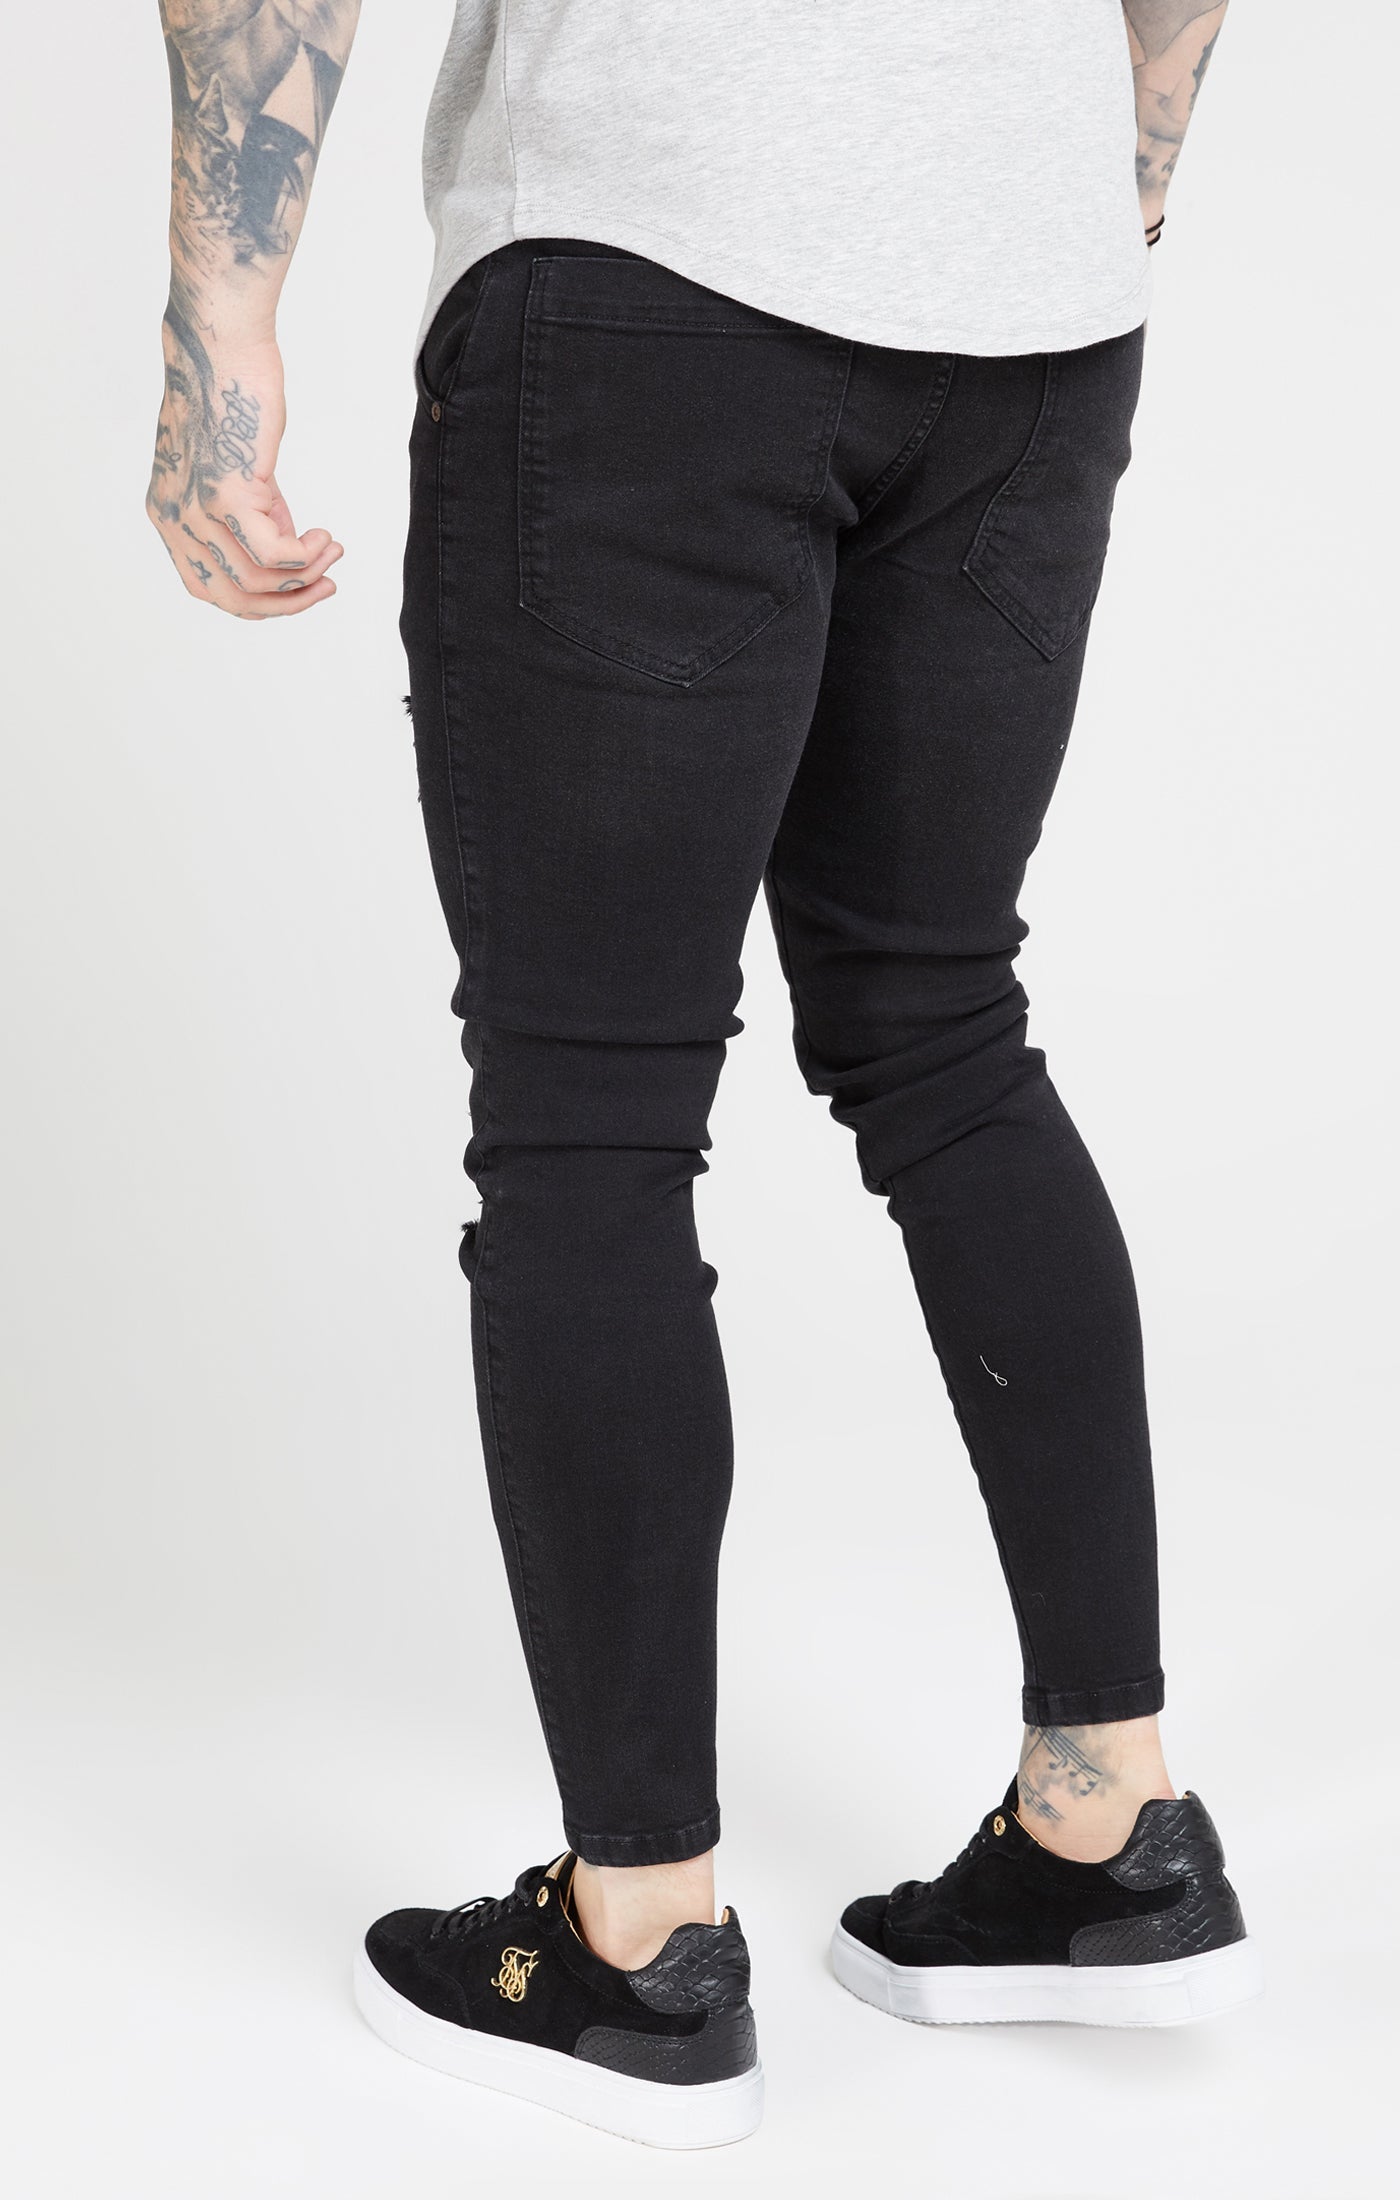 Essential Distressed Skinny Jean in Black Jeans SikSilk   